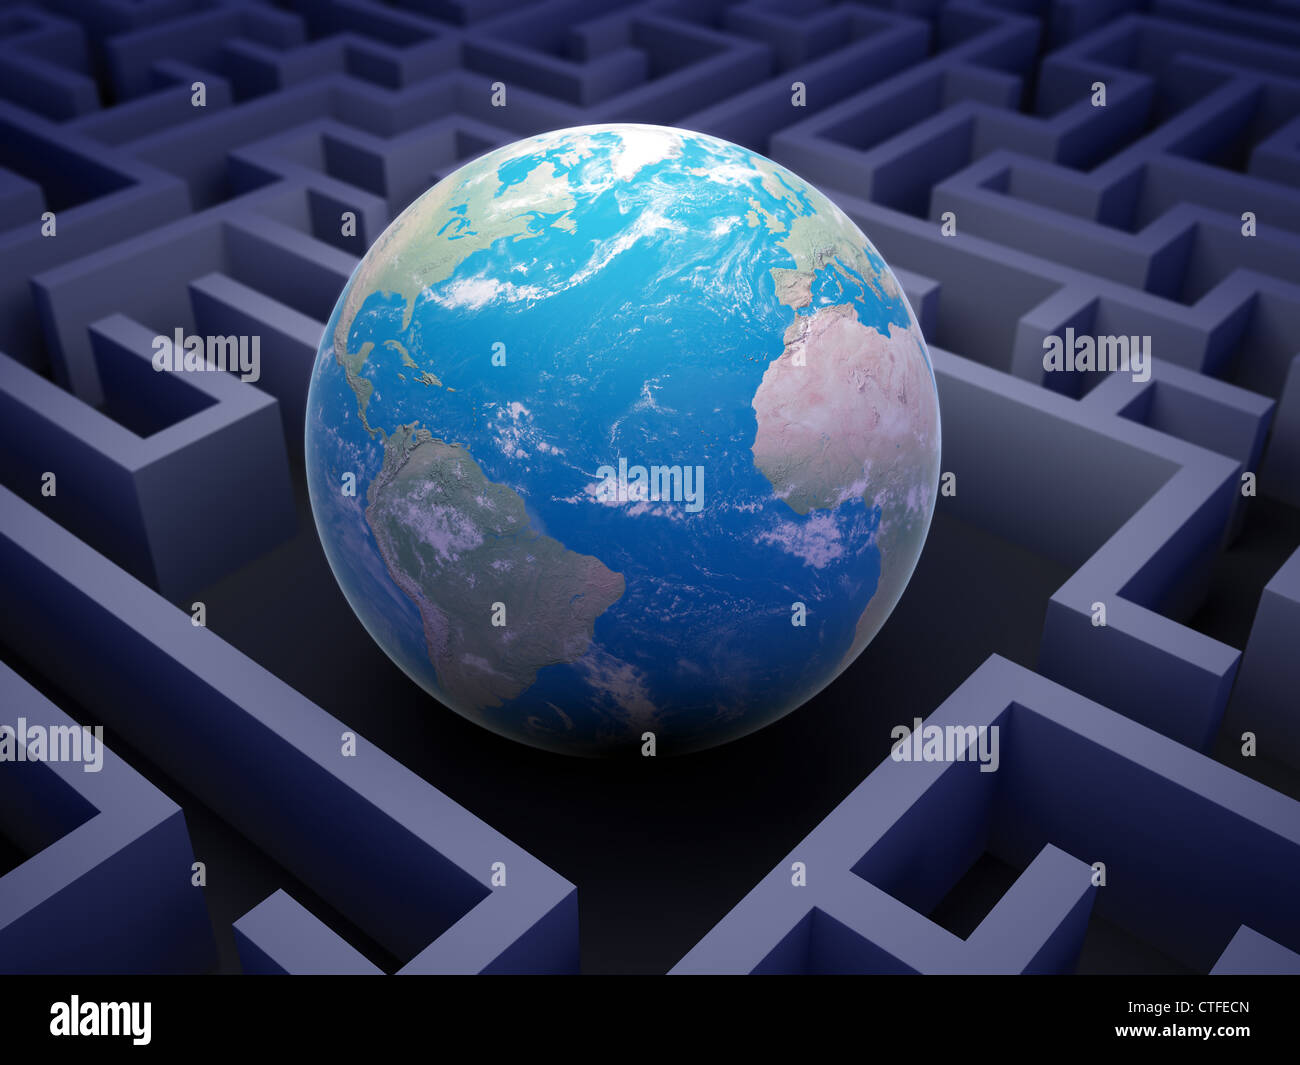 Abstract globe à l'intérieur d'un labyrinthe - concept de coopération internationale. Banque D'Images